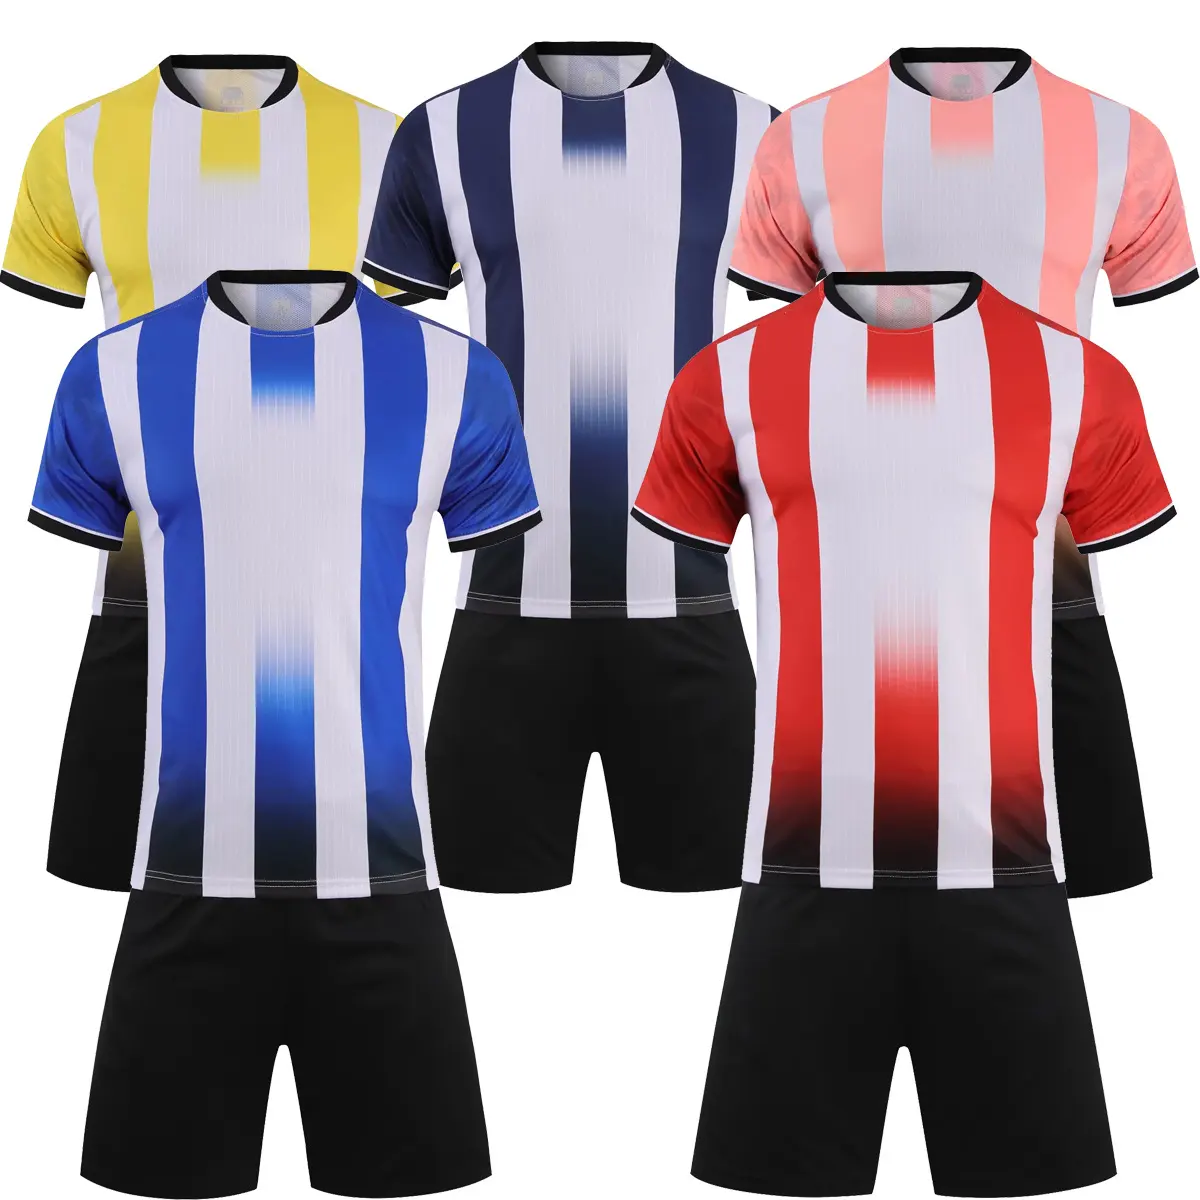 Vêtements de Football pour adultes et enfants, 100% Polyester, maillots de Football pour hommes, combinaisons d'entraînement professionnelles personnalisées, uniformes, vêtements de sport